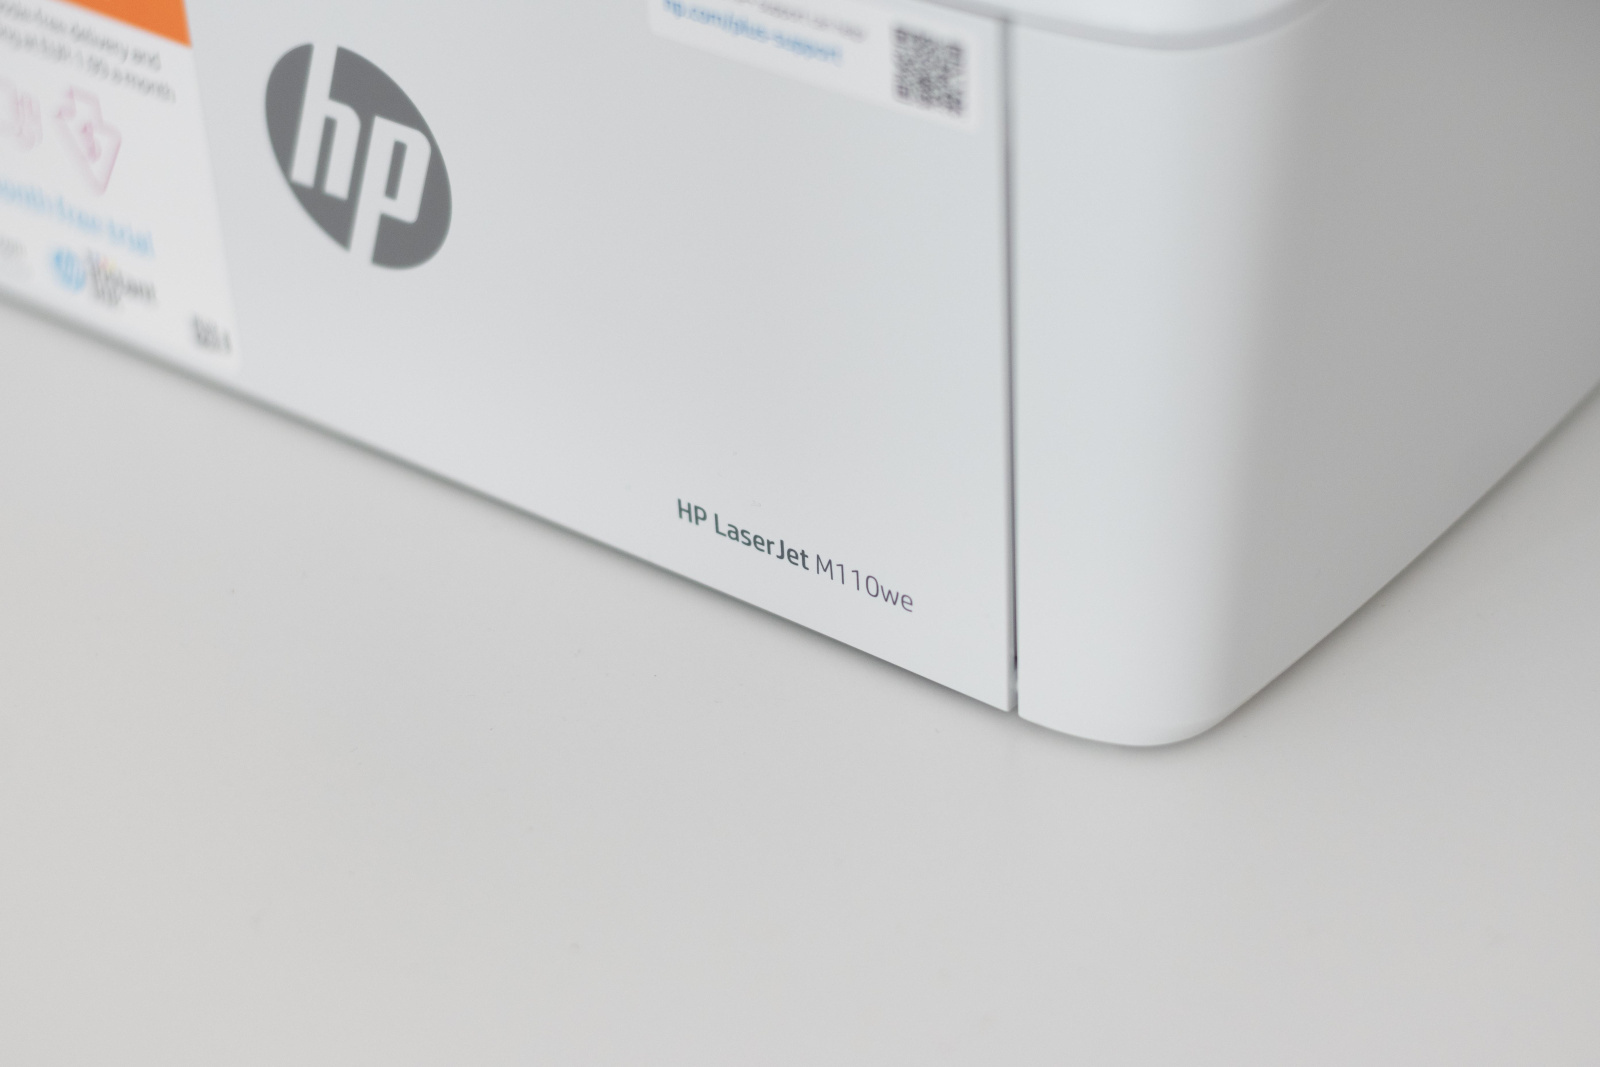  Tiskalnik HP LaserJet M110we podrobno. 